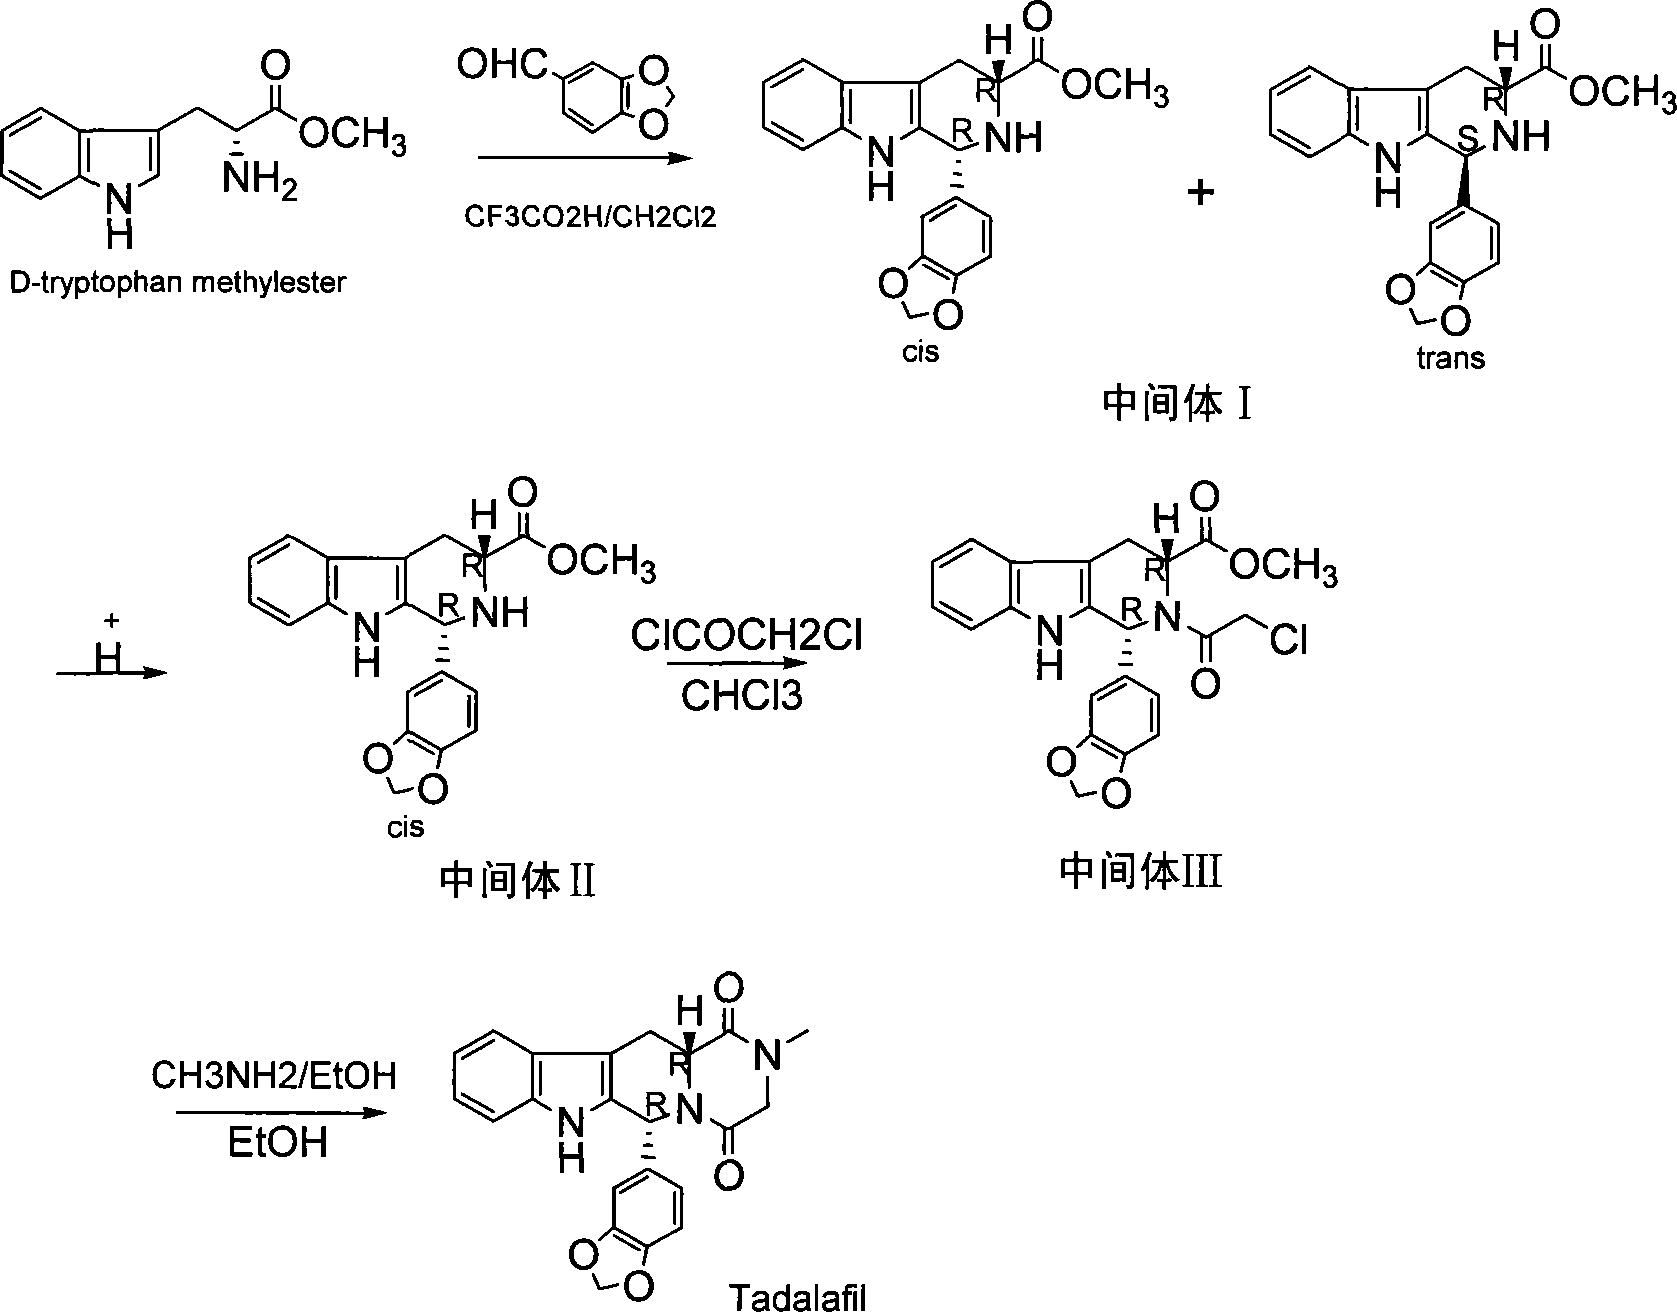 Method for synthesizing phosphodiesterase 5 inhibitor tadanafil